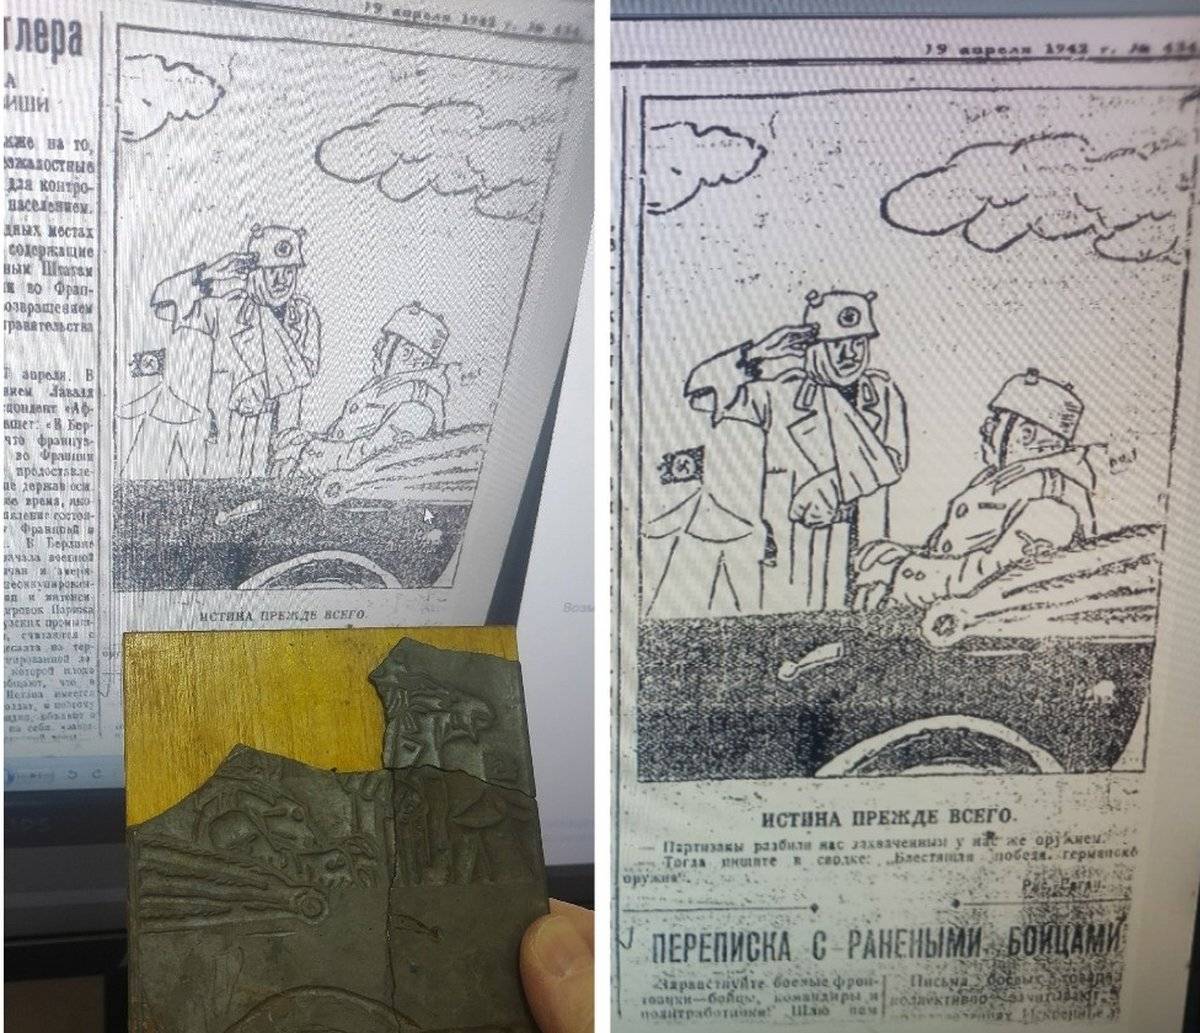 Иллюстрация в номере газеты 2-й Ударной армии «Отвага» от 19 апреля 1942 года.